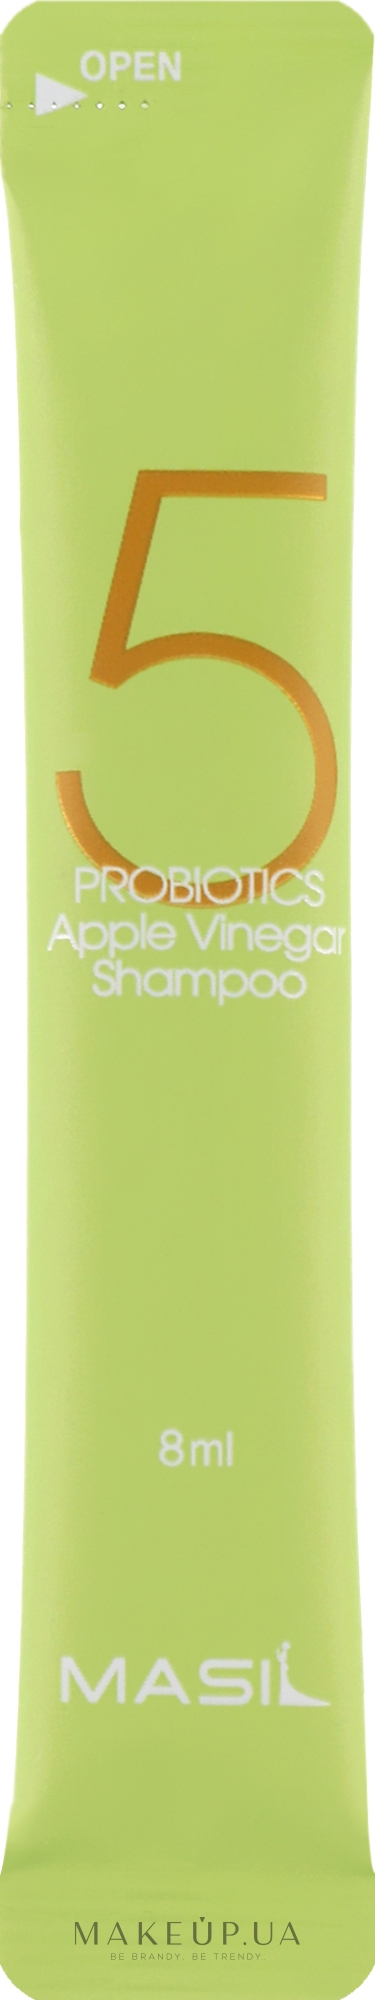 М'який безсульфатний шампунь з пробіотиками та яблучним оцтом - Masil 5 Probiotics Apple Vinegar Shampoo (пробник) — фото 8ml